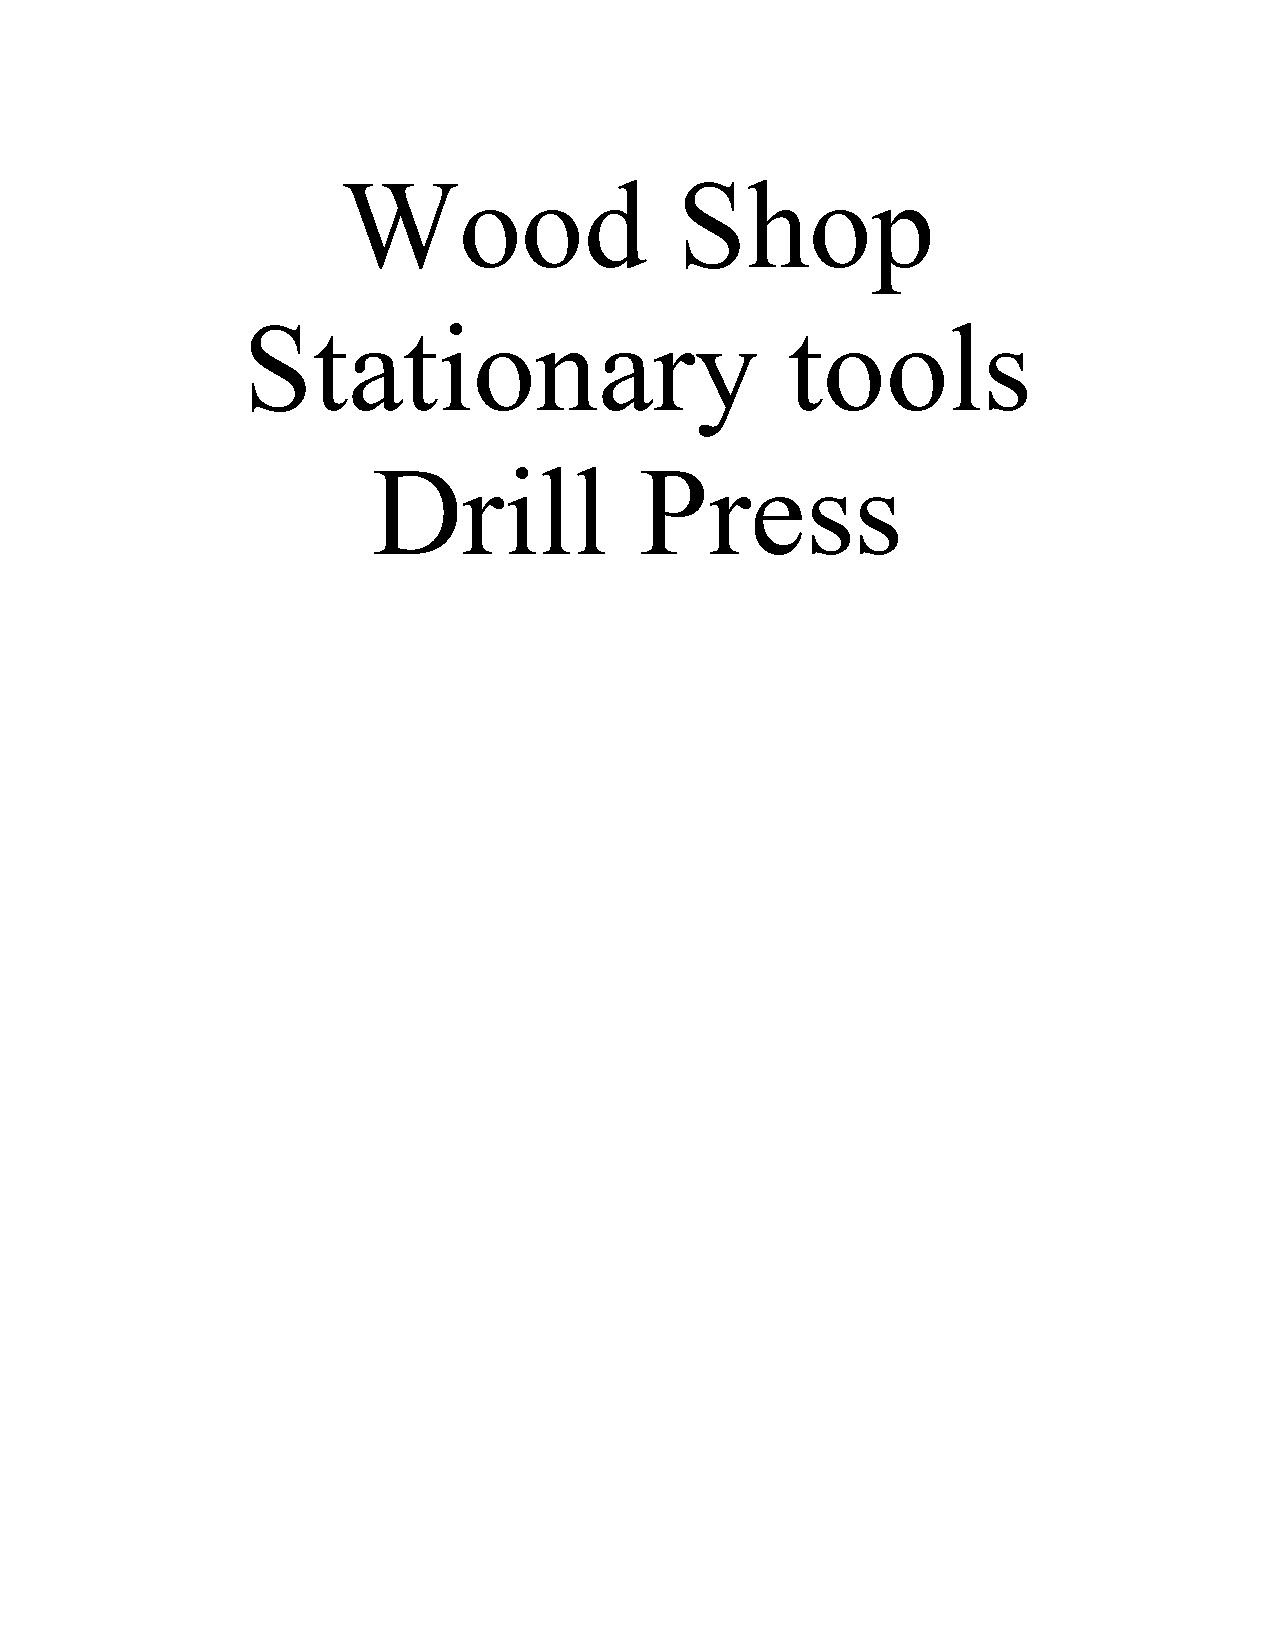 Wood Stationary Drill Press.pdf